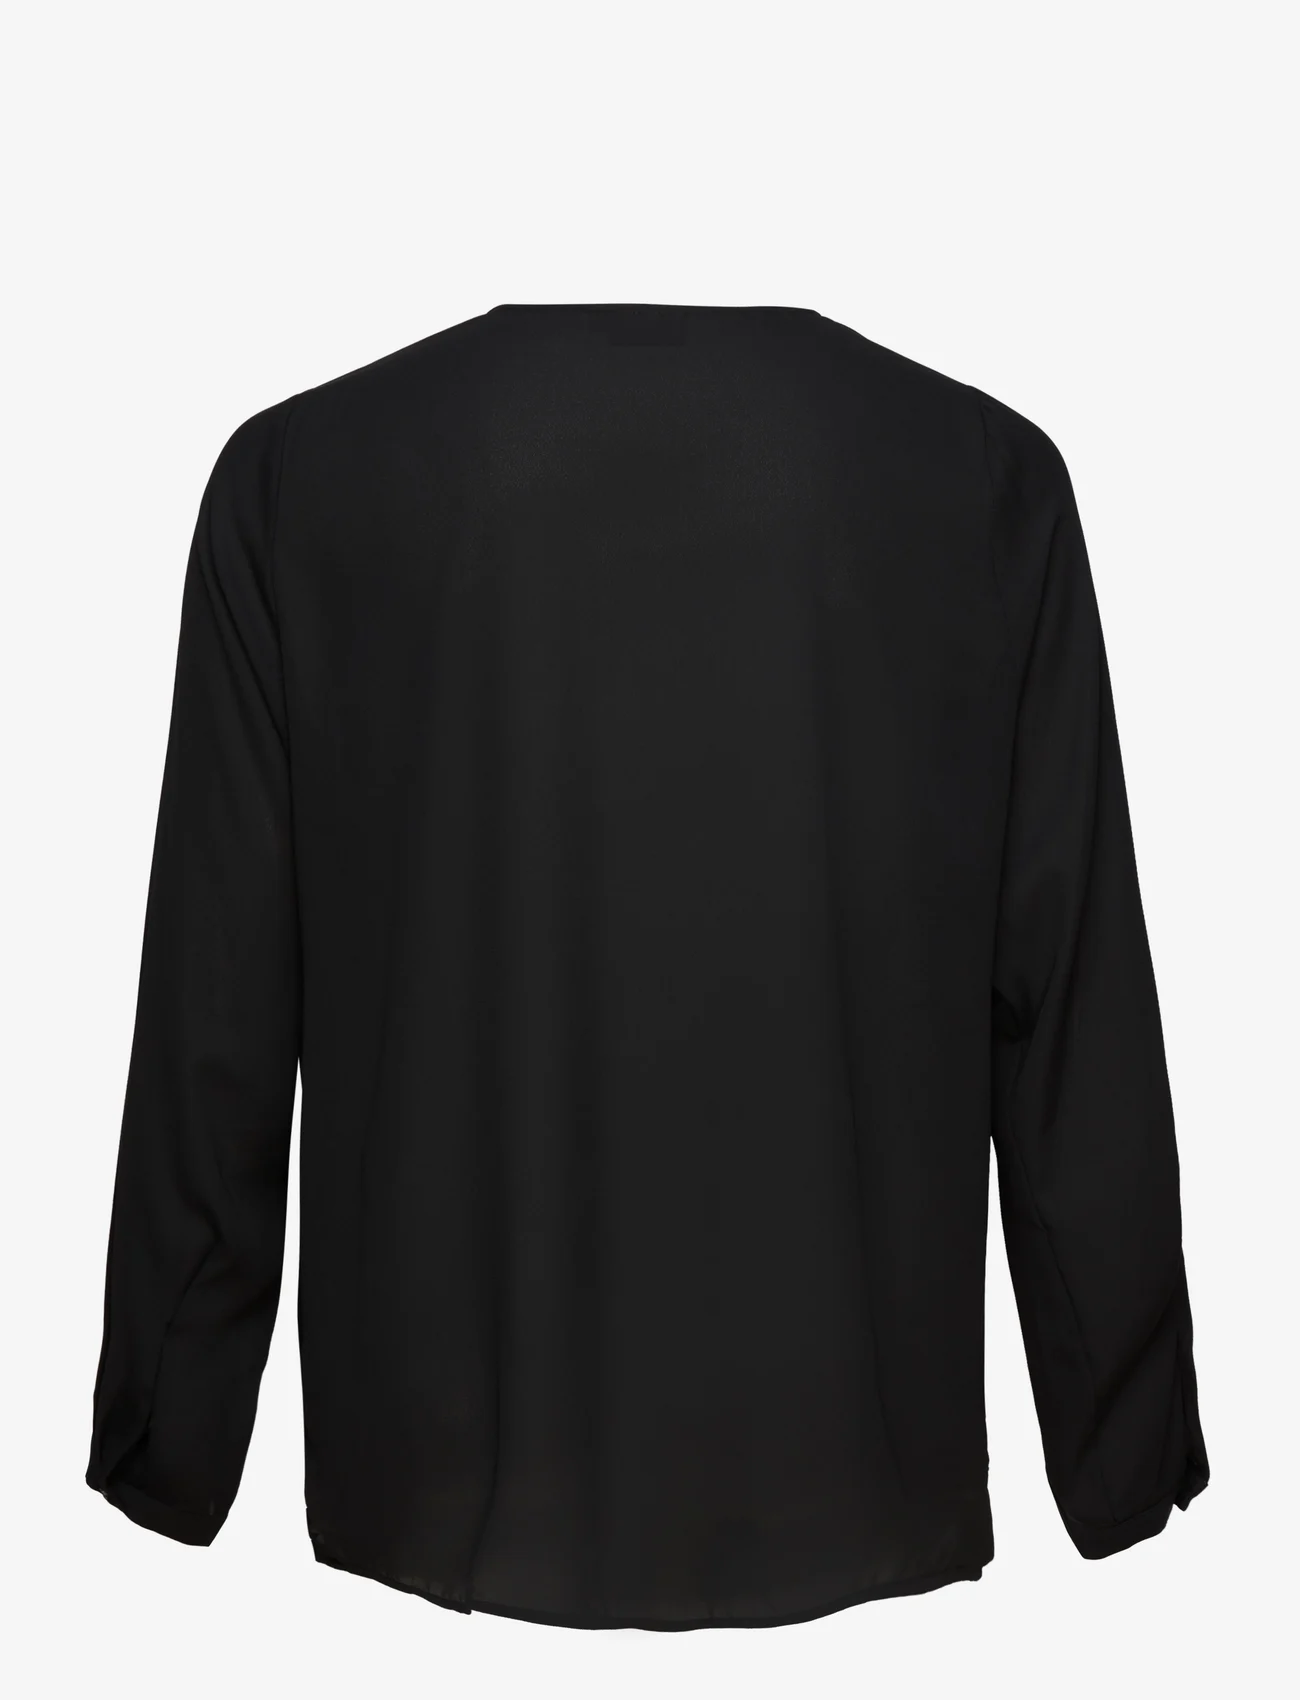 Zizzi - VSELI, L/S, SHIRT - langærmede skjorter - black - 1